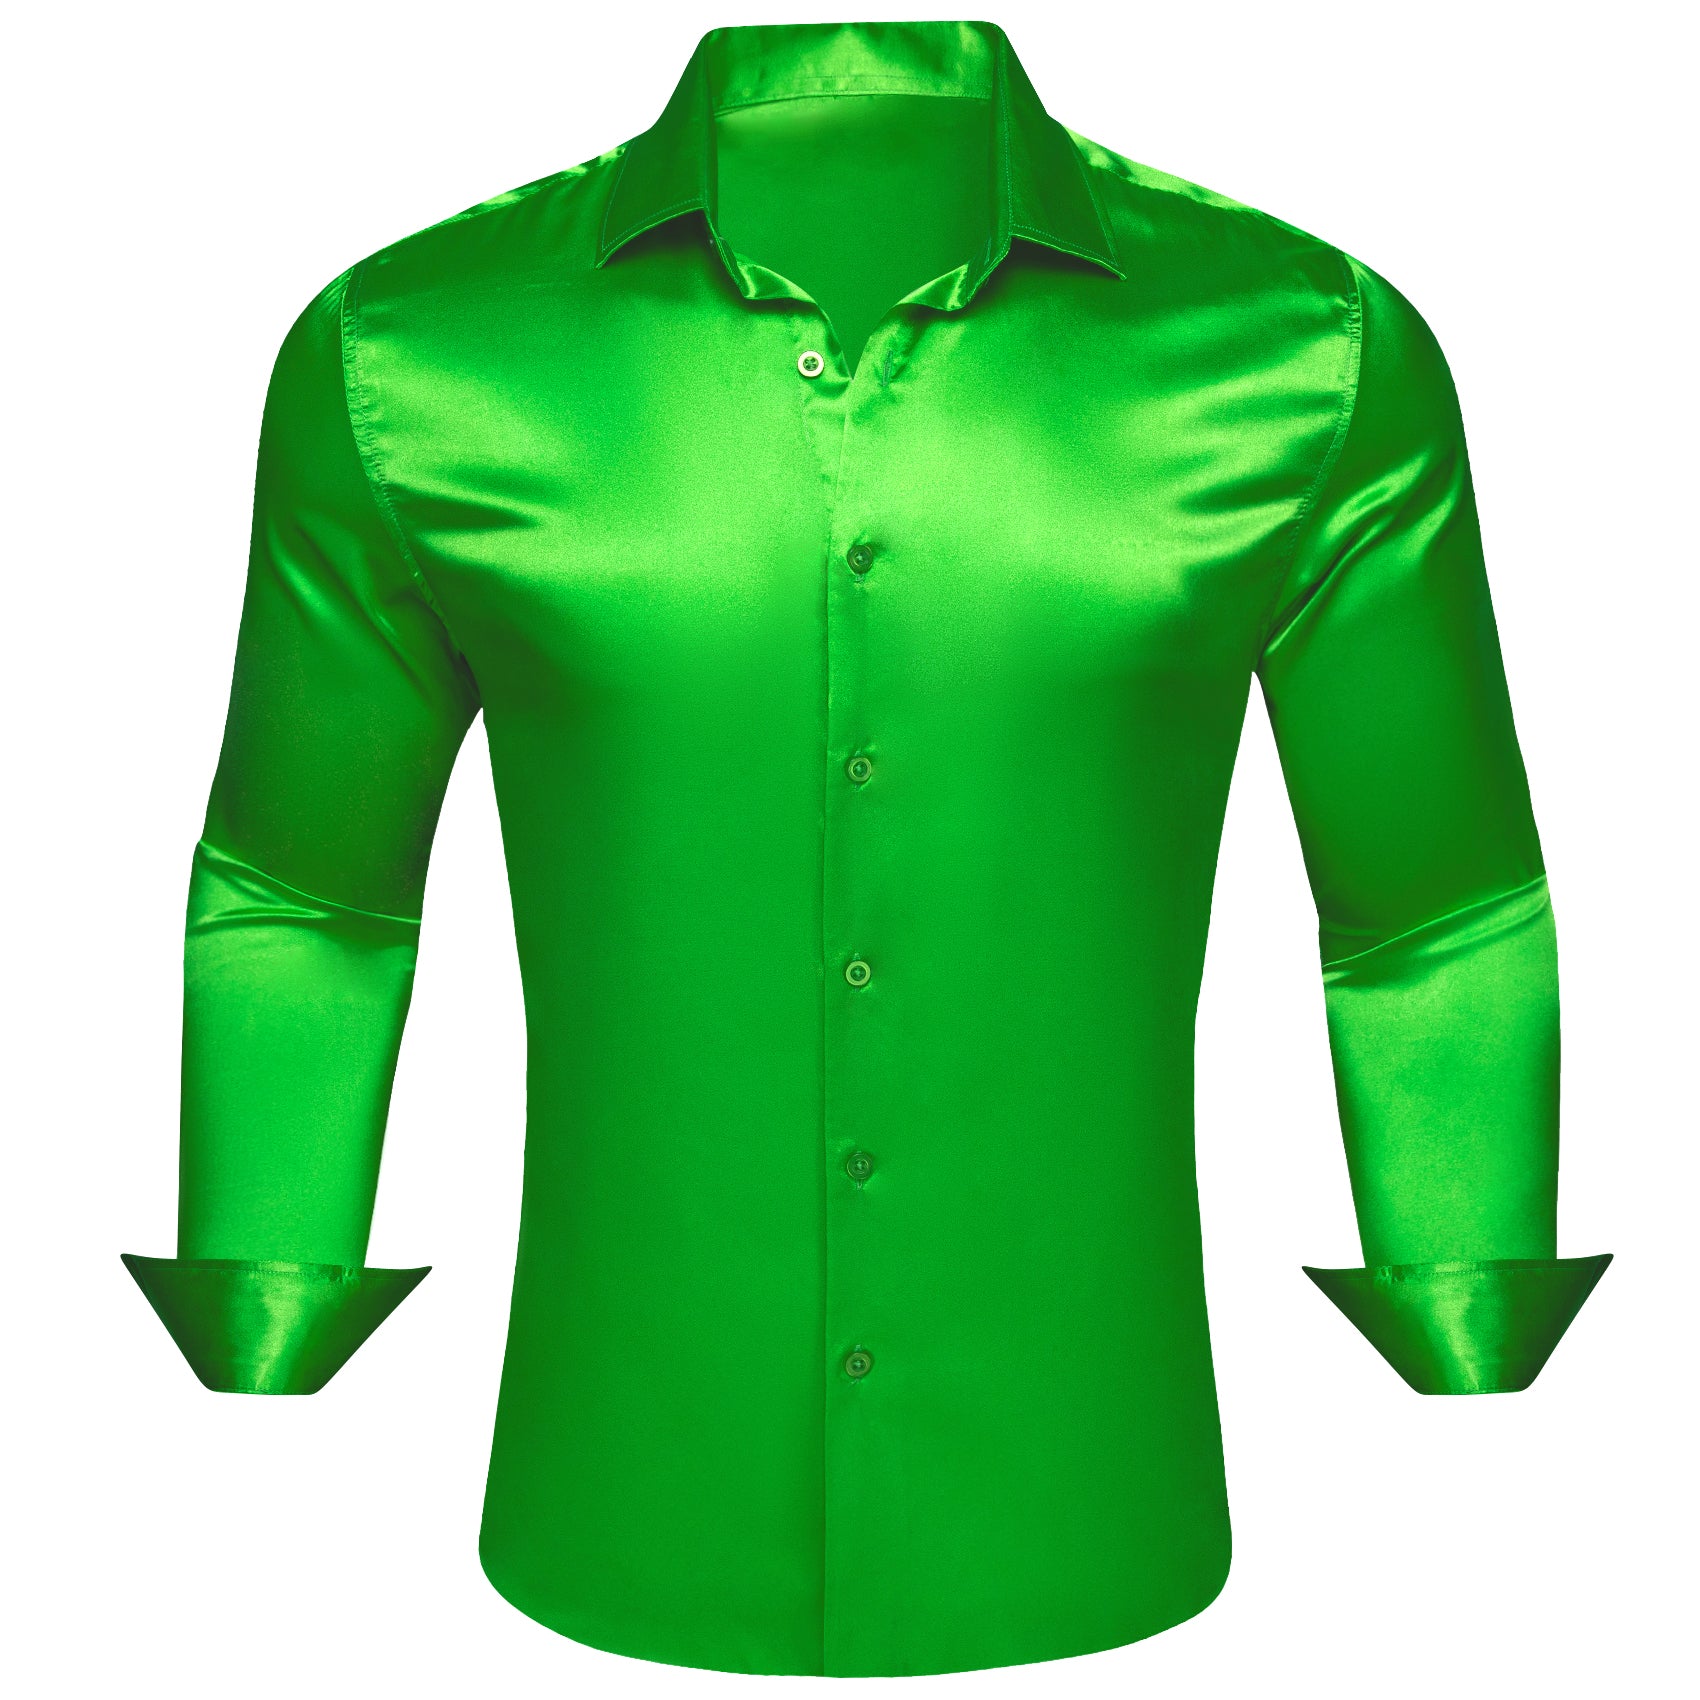 Barry.wang Cobalt Green Solid Silk Shirt